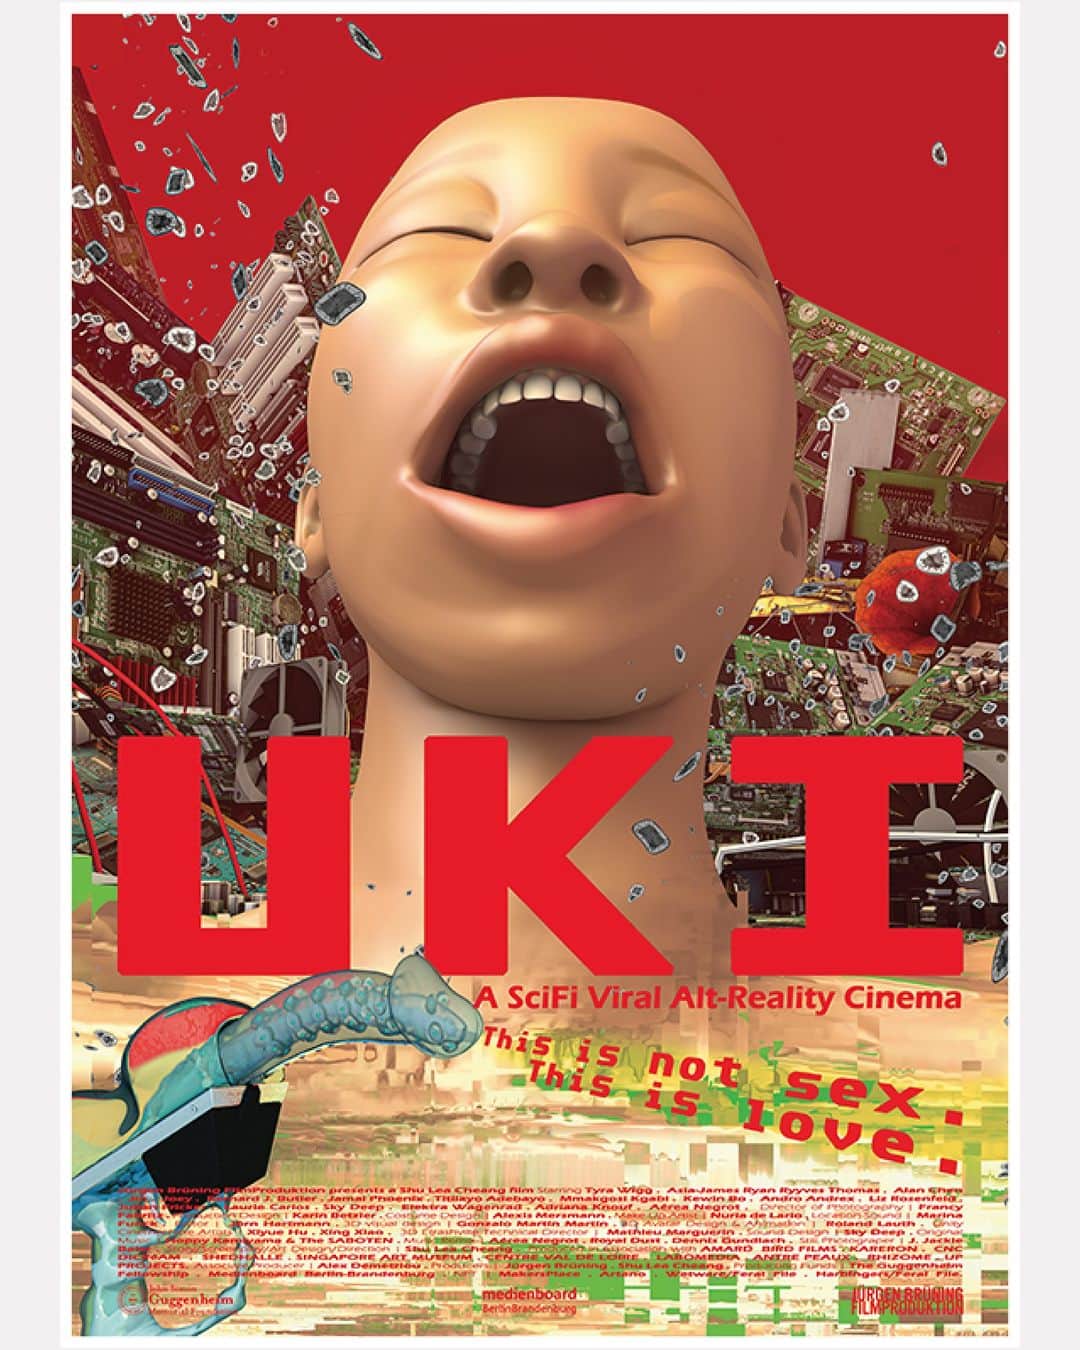 UPLINK film distributionのインスタグラム：「🔻日本プレミア特別上映決定🔻 『UKI』アップリンク吉祥寺にて、11月4日（土）【一日限定上映】🔴⚪🔴 ・・・ 『フレッシュ・キル』『I.K.U.』で知られるシューリー・チェンの最新作『UKI』を監督のトークショー付きでアップリンク吉祥寺で日本プレミア特別上映。 『UKI』は、オーガニックデータを収集するレイコを主人公とした『I.K.U.』の続編として企画された。3D仮装空間で構築されたセットで展開されるマルチスレッドのプロットは、ウイルスとデータに汚染された代替宇宙で、廃れた人間と非人間とのSFを提案する。  ＜シューリー・チェン略歴＞ シュー・リー・チェンは、ジャンルを超えたジェンダー・ハッキング・アートを実践するアーティストであり映画監督。 ニューヨークのグッゲンハイム美術館に委託・収蔵された初のwebアート『BRANDON』（1998 - 99）でネットアートのパイオニアとして知られ、2019年のベネチアSF・ビエンナーレでは台湾代表としてミクストメディア・インスタレーション『3x3x6』を発表した。 SF・ニュー・クィア・シネマという独自のジャンルを築き、『フレッシュ・キル』（1994）、『I.K.U.』（2000）、『FLUIDø』（2017）、『UKI』（2023）という4本の長編映画を制作。2023年には、LASアート財団（ベルリン）、ポンピドゥー・センター（パリ）、MoMA（ニューヨーク）、ICA（ロンドン）などの映画祭や美術館で『UKI』のツアーを行う。現在、Hope, Techno-humanities（Museion、イタリア）、Attention After Technology（トロンハイム、ノルウェー）で展示中。  https://joji.uplink.co.jp/movie/2023/69466  #UKI #IKU　#FRESHKILL　#ShuLeaCheang #アップリンク吉祥寺」